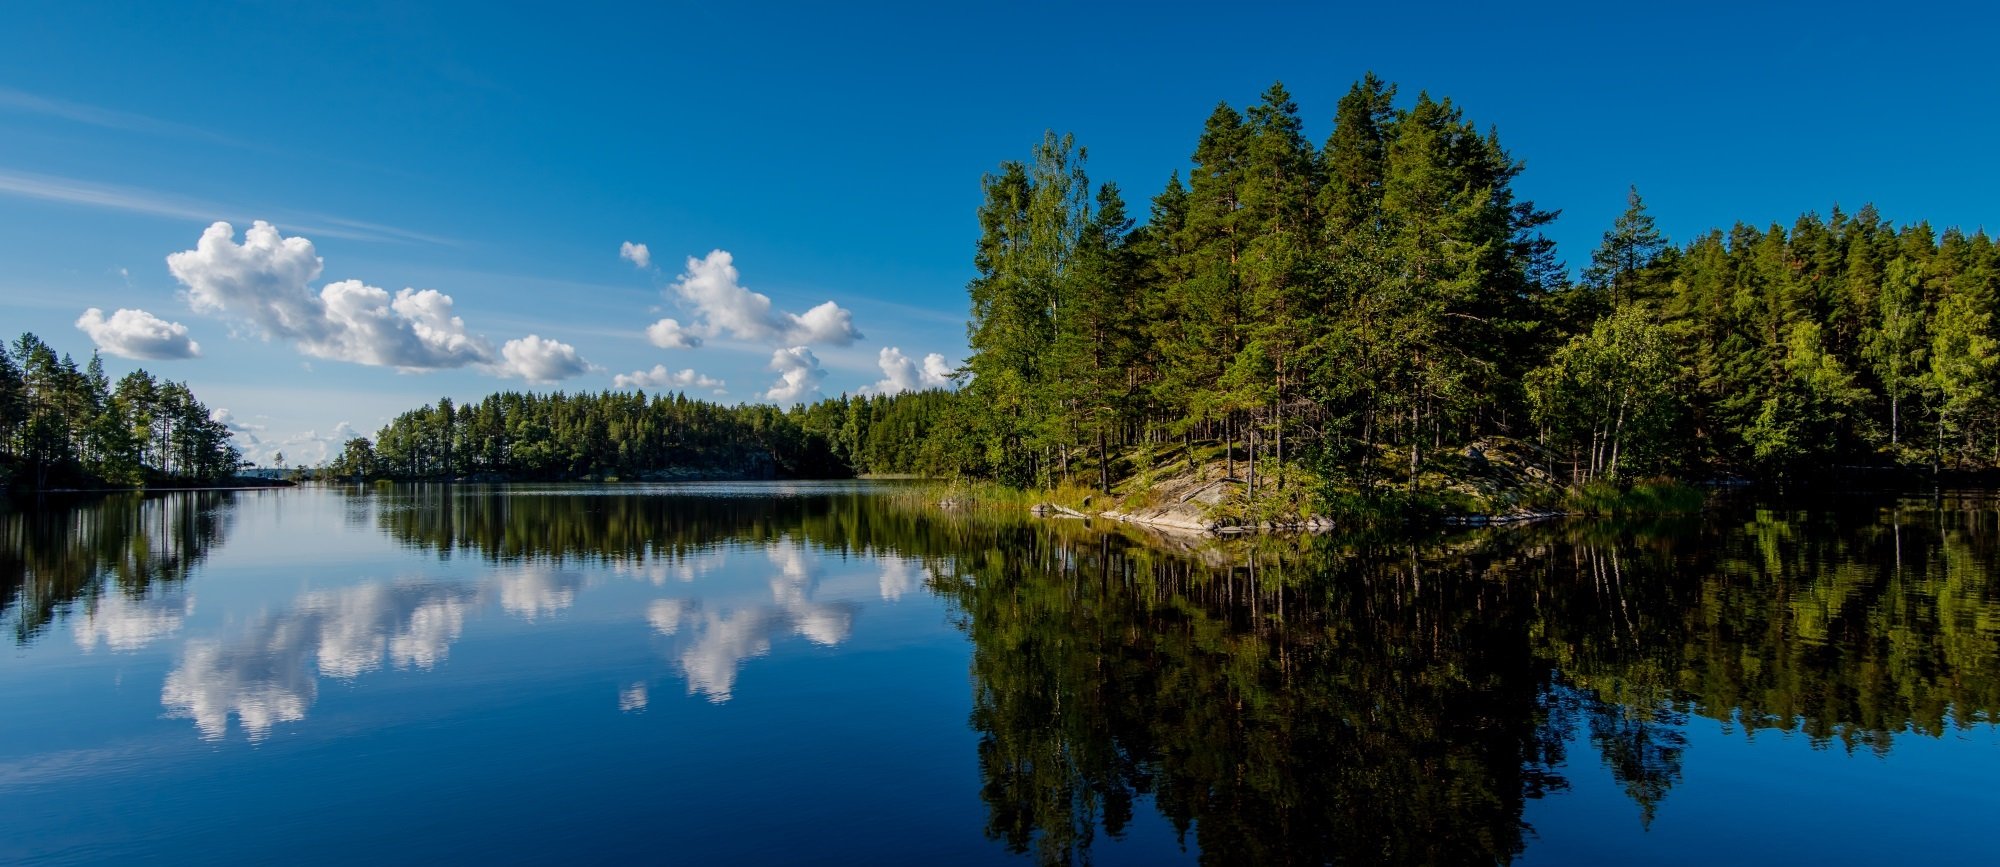 Финское озеро 5 букв. Озеро Сайма Финляндия. Озерное плато Финляндии. Финляндия Липери озеро. Сайменские озера в Финляндии.